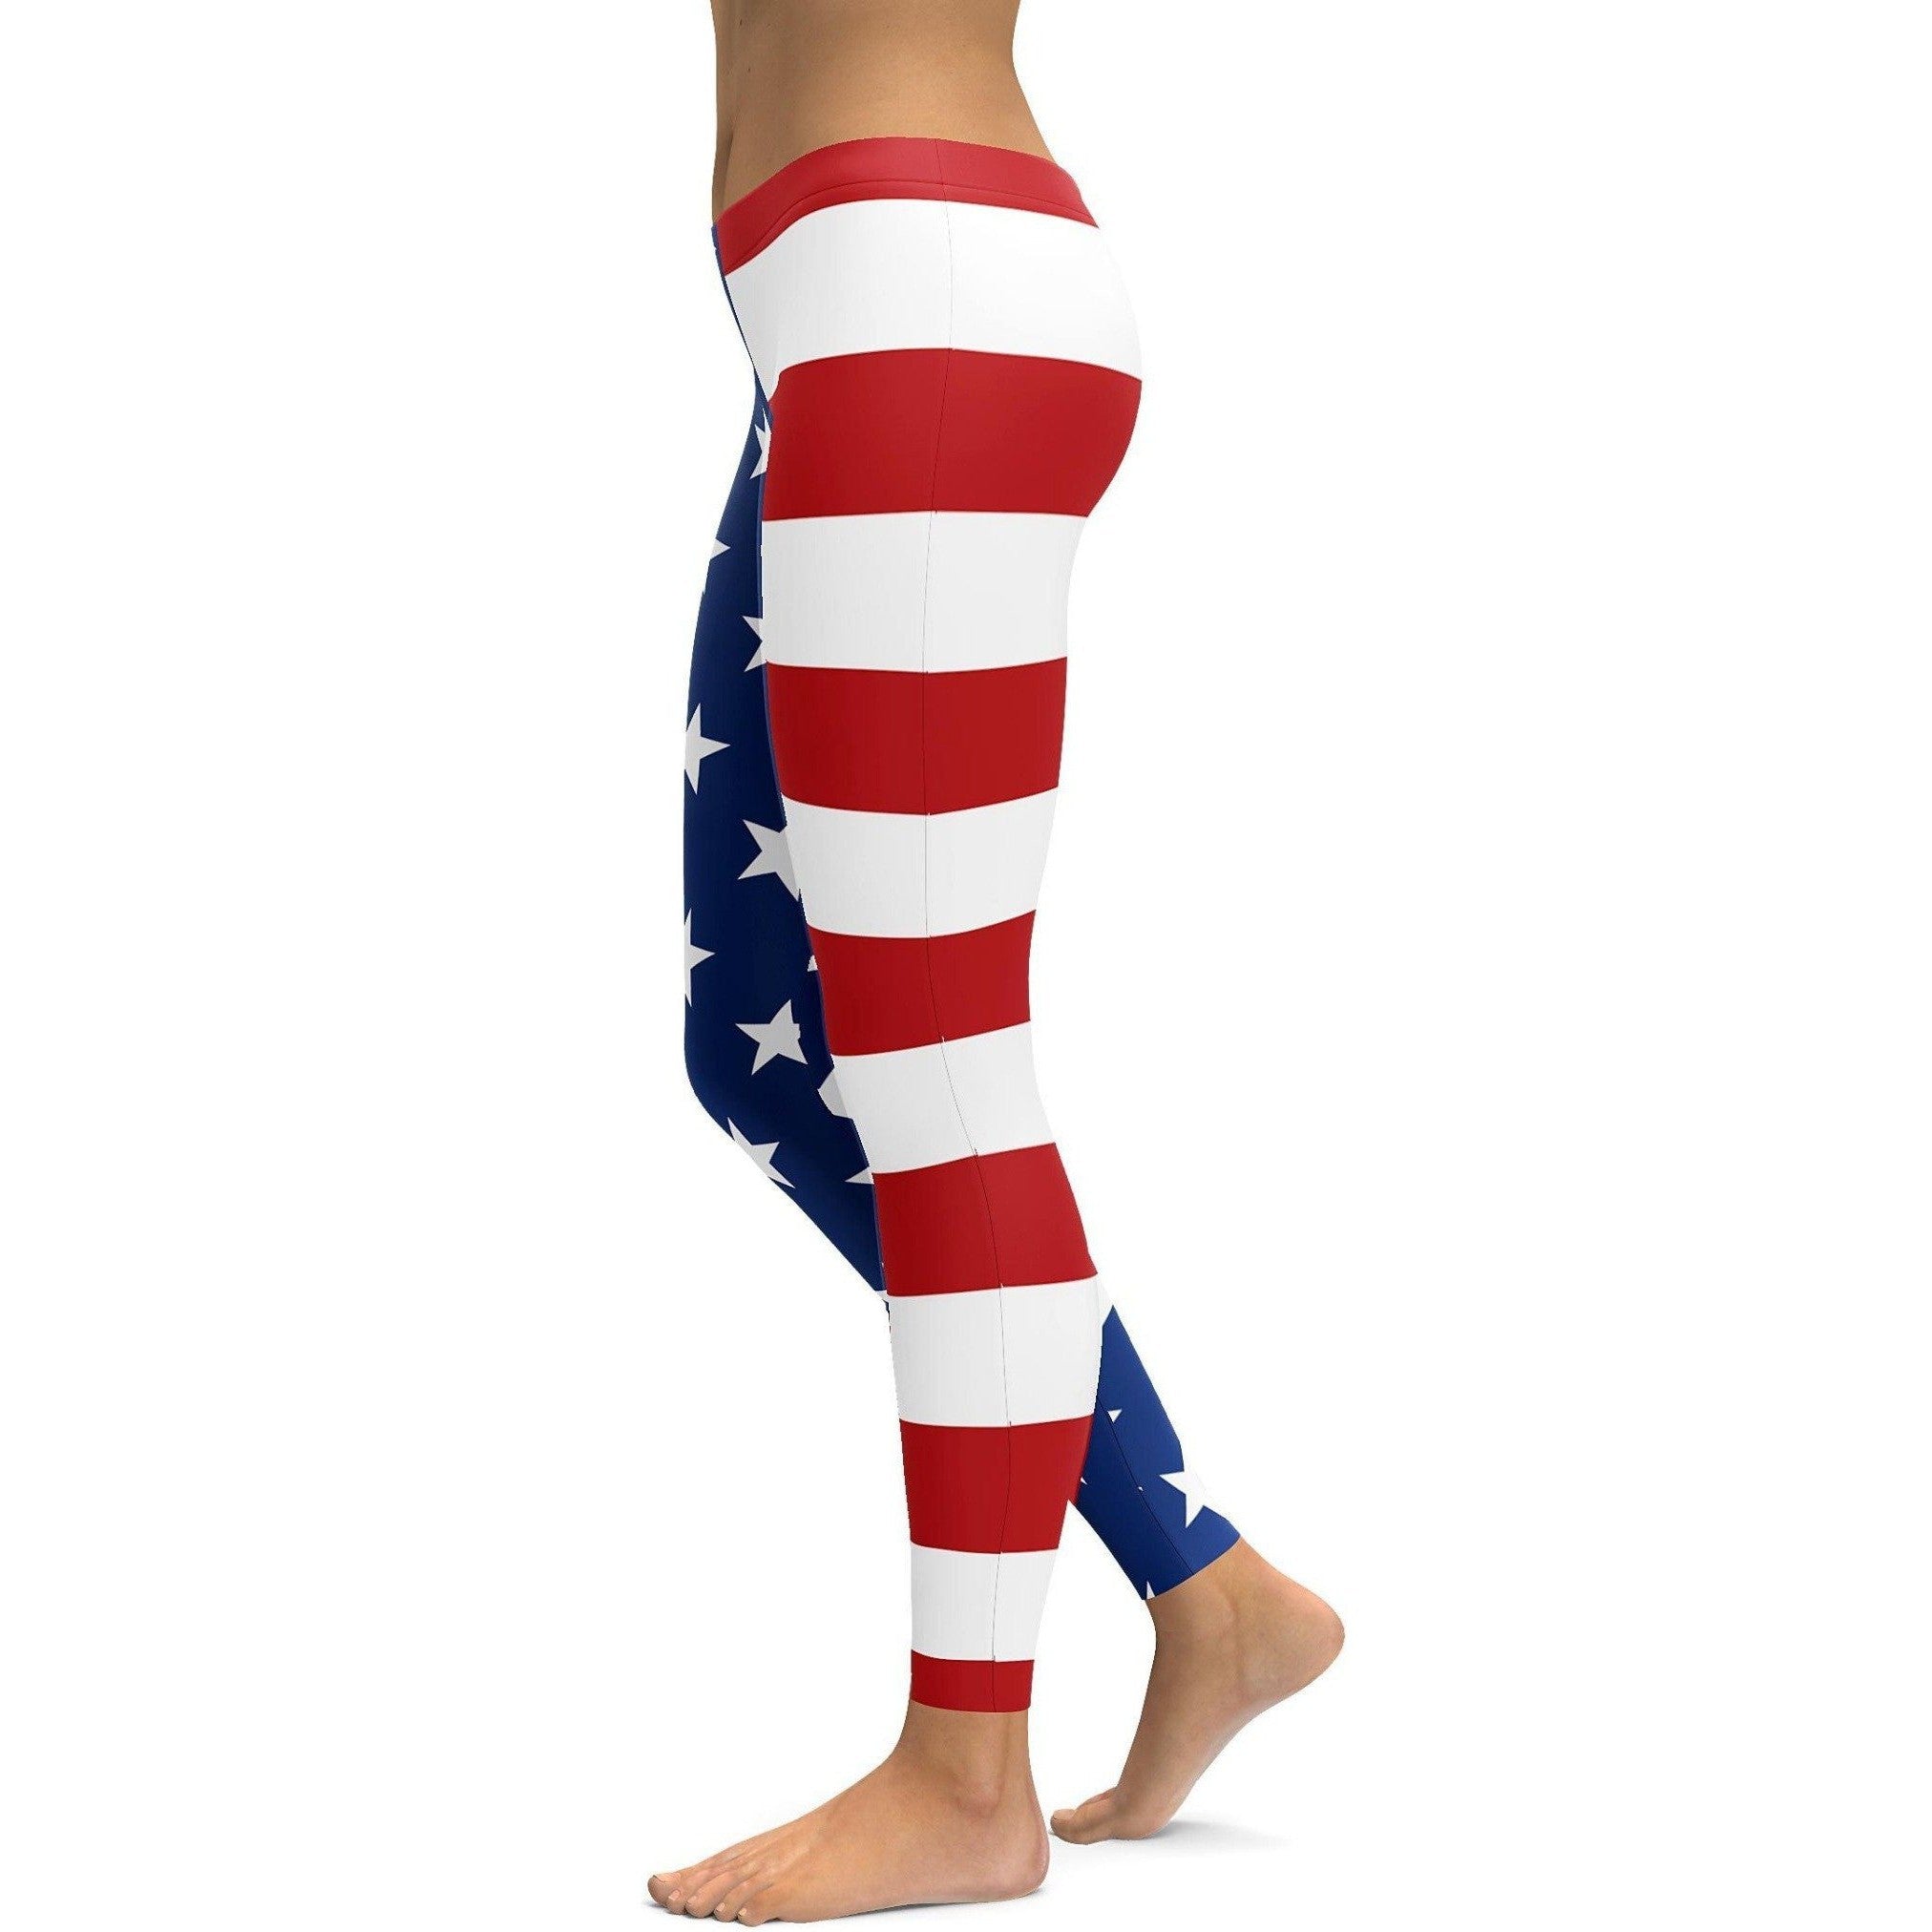 USA Stars & Stripes Leggings